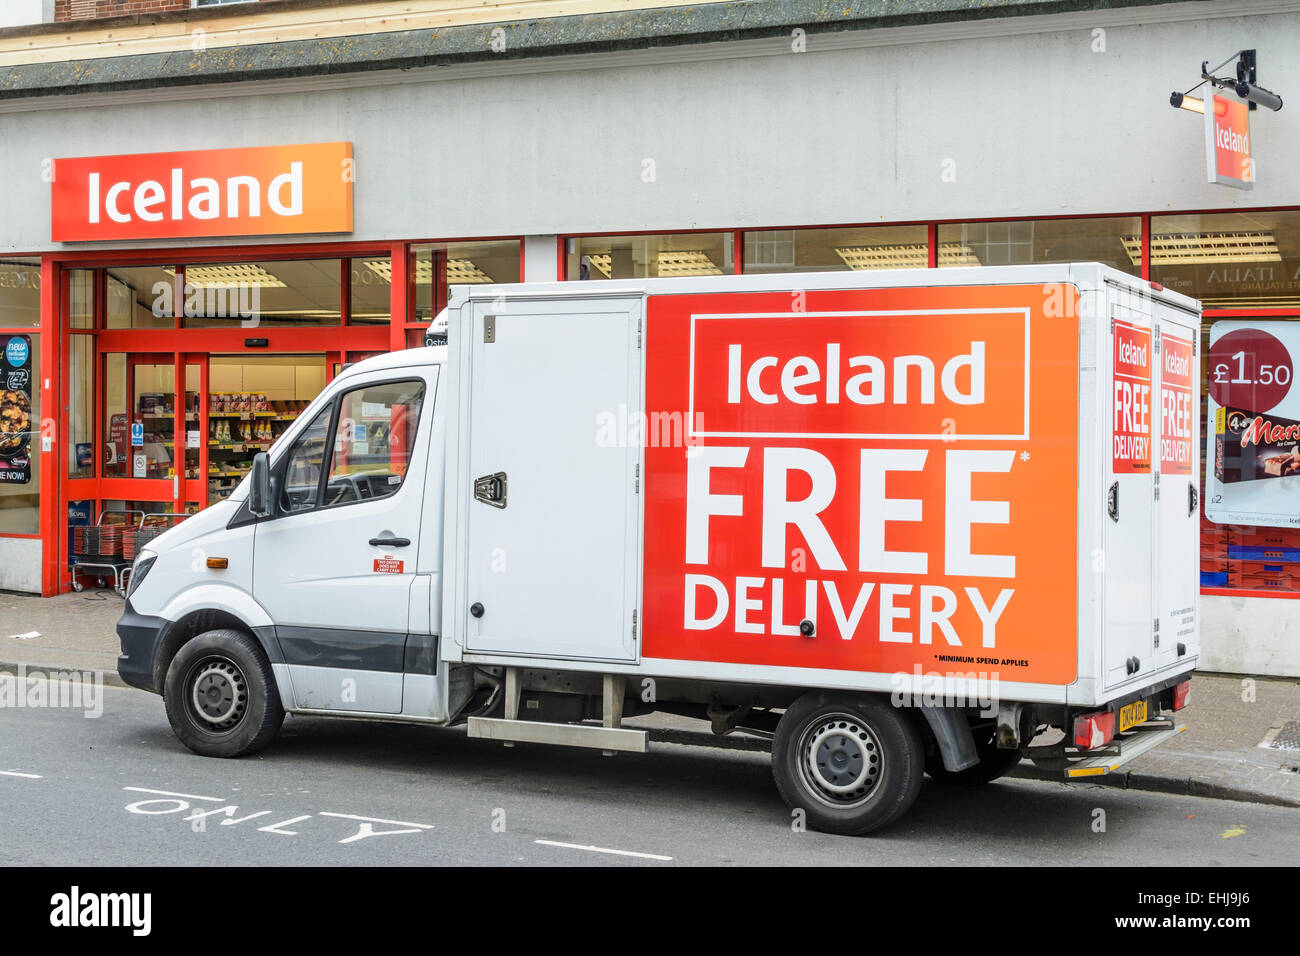 L'Islande delivery van stationné à l'extérieur d'un magasin d'alimentation de l'Islande à Littlehampton, West Sussex, Angleterre, Royaume-Uni. Banque D'Images